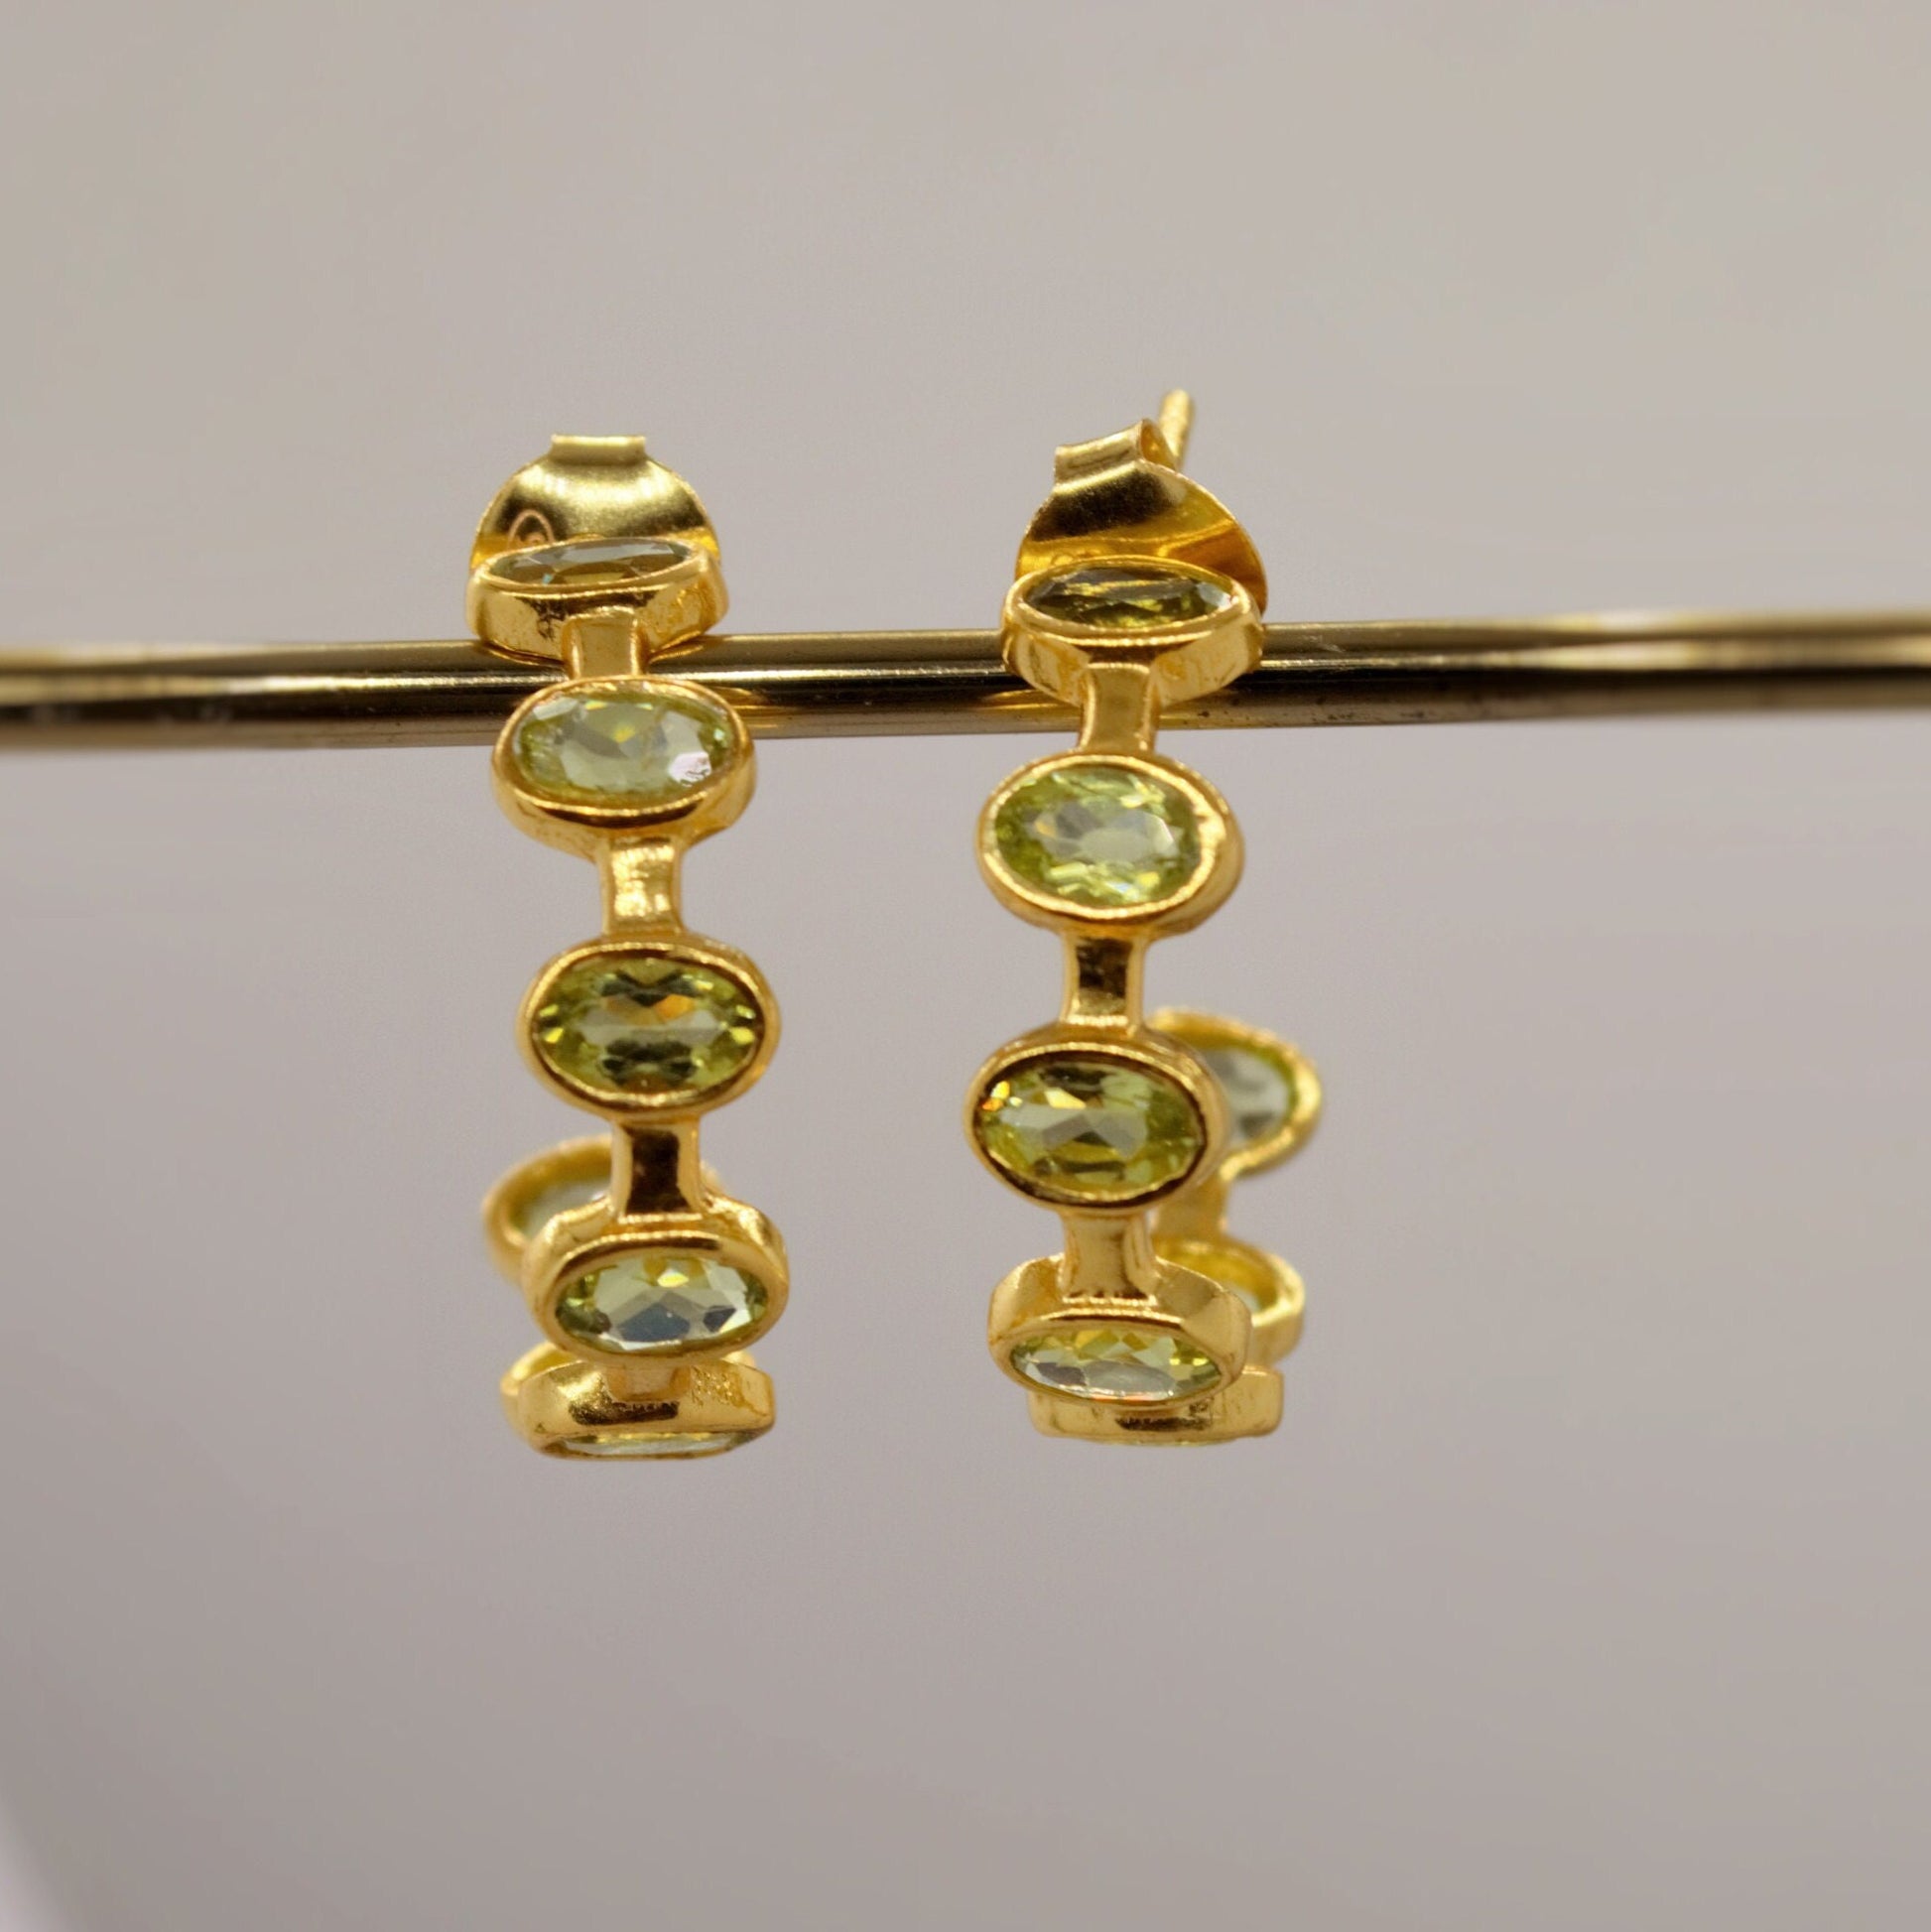 Peridot Sterling Silver Hoop Earrings, Peridot Jewelry, August Birthstone Earrings, Minimalist Green Earrings, Unique Gifts For Her